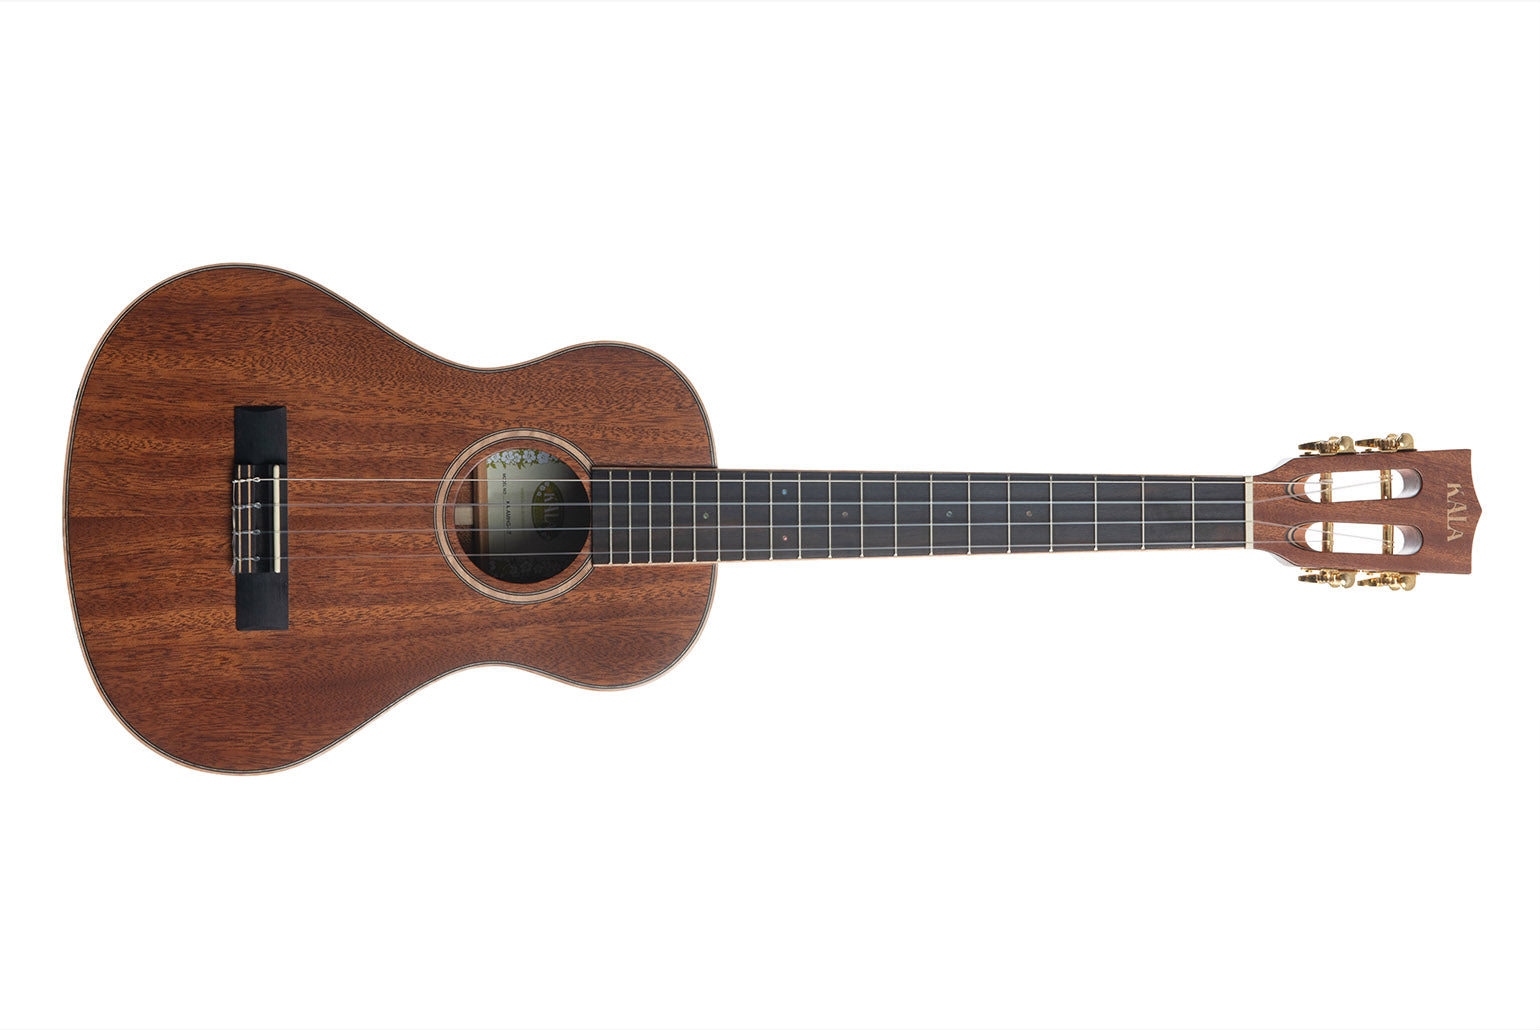 Tenor XL ukulele size example